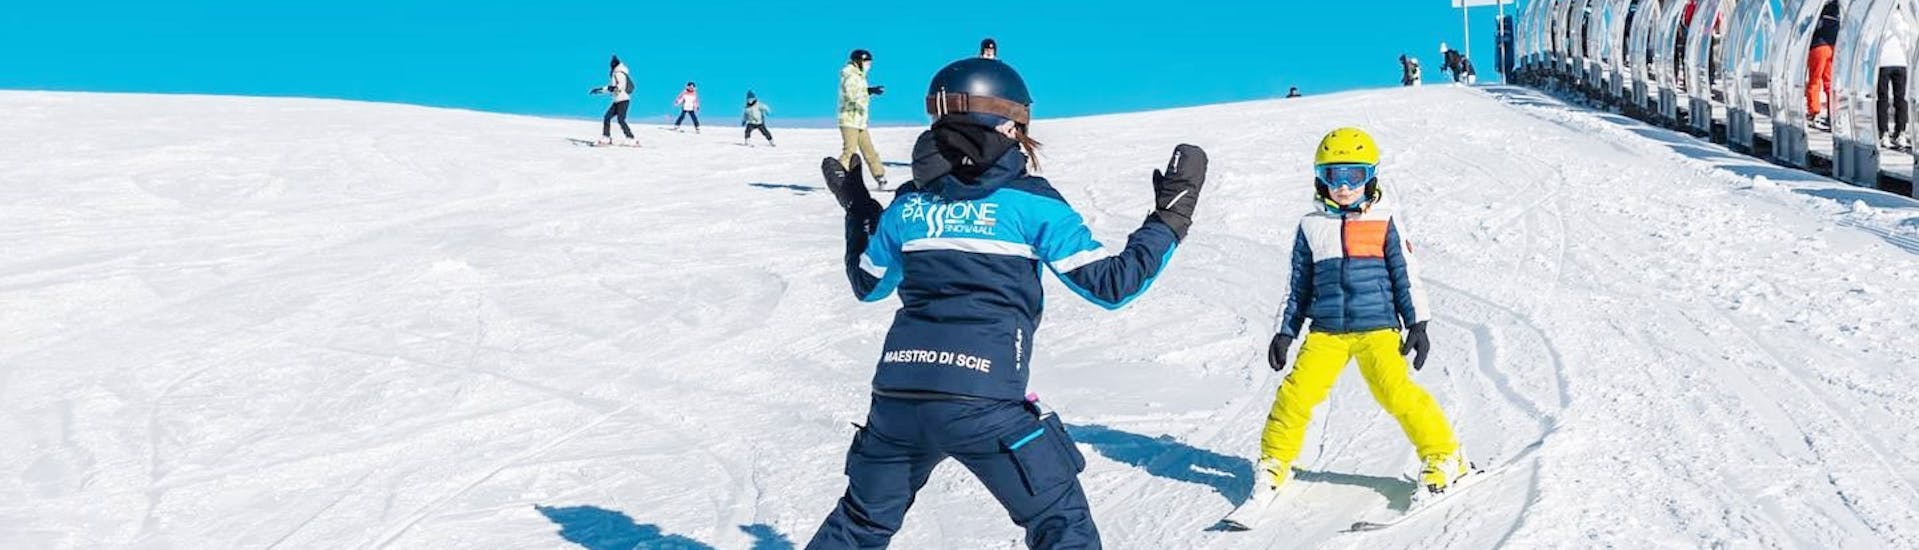 Cours particulier de ski Enfants dès 3 ans pour Tous niveaux.